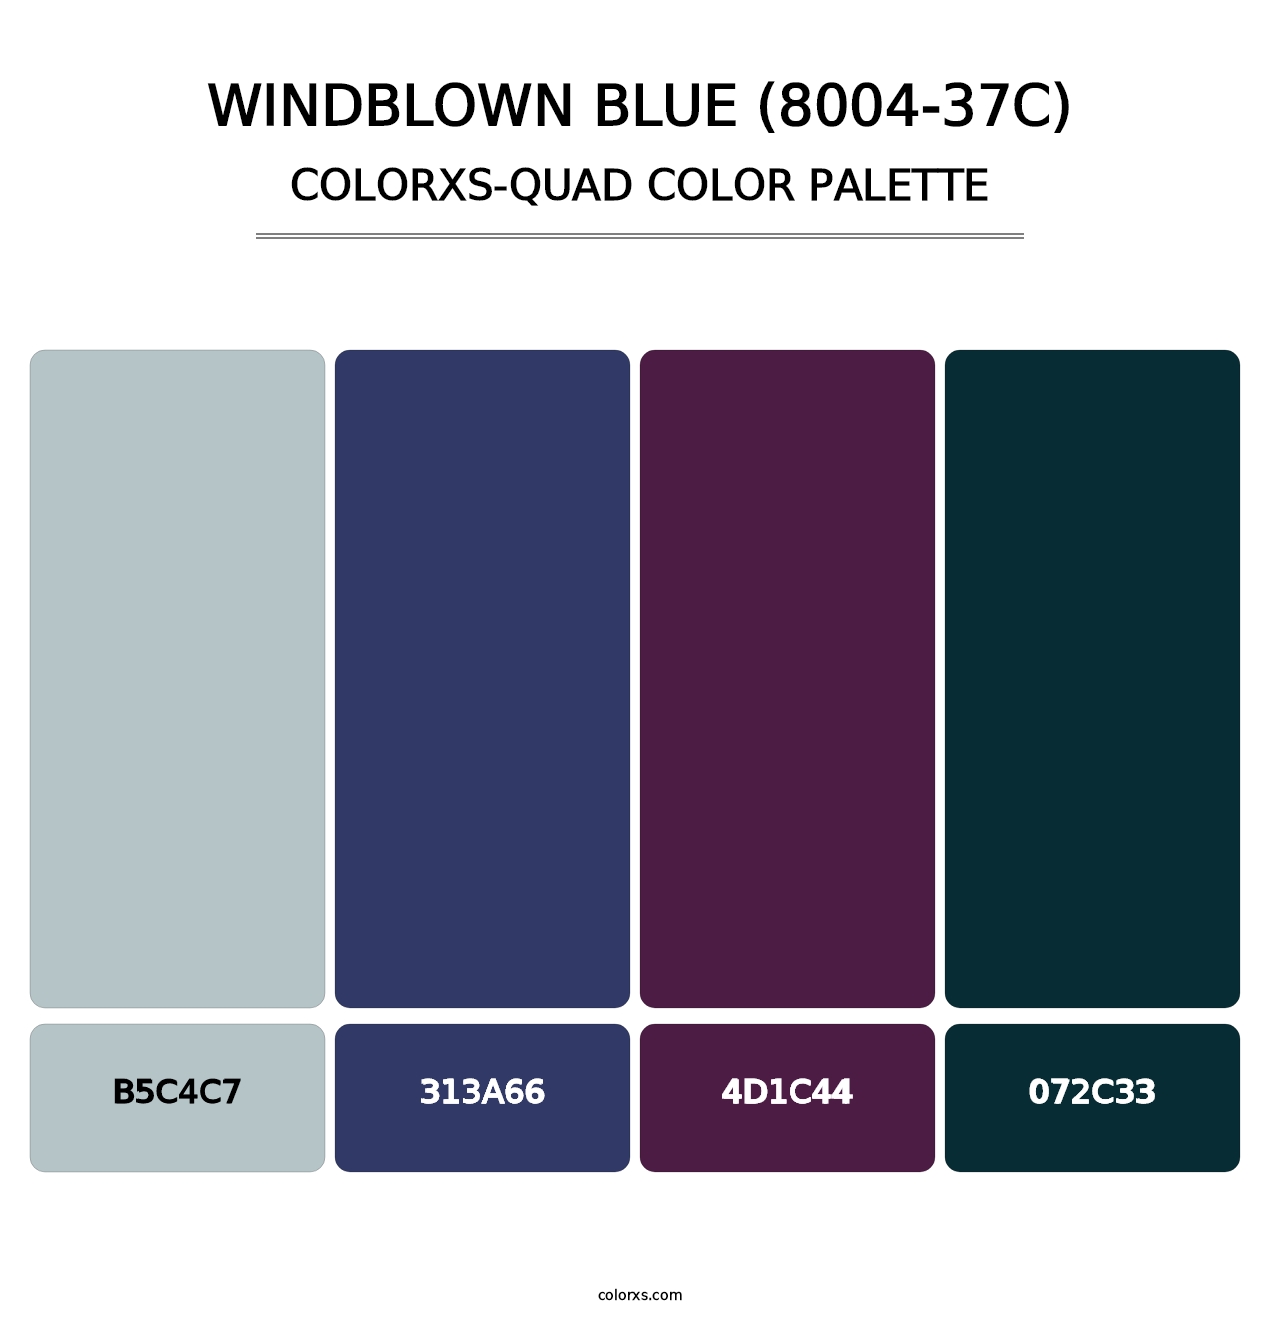 Windblown Blue (8004-37C) - Colorxs Quad Palette